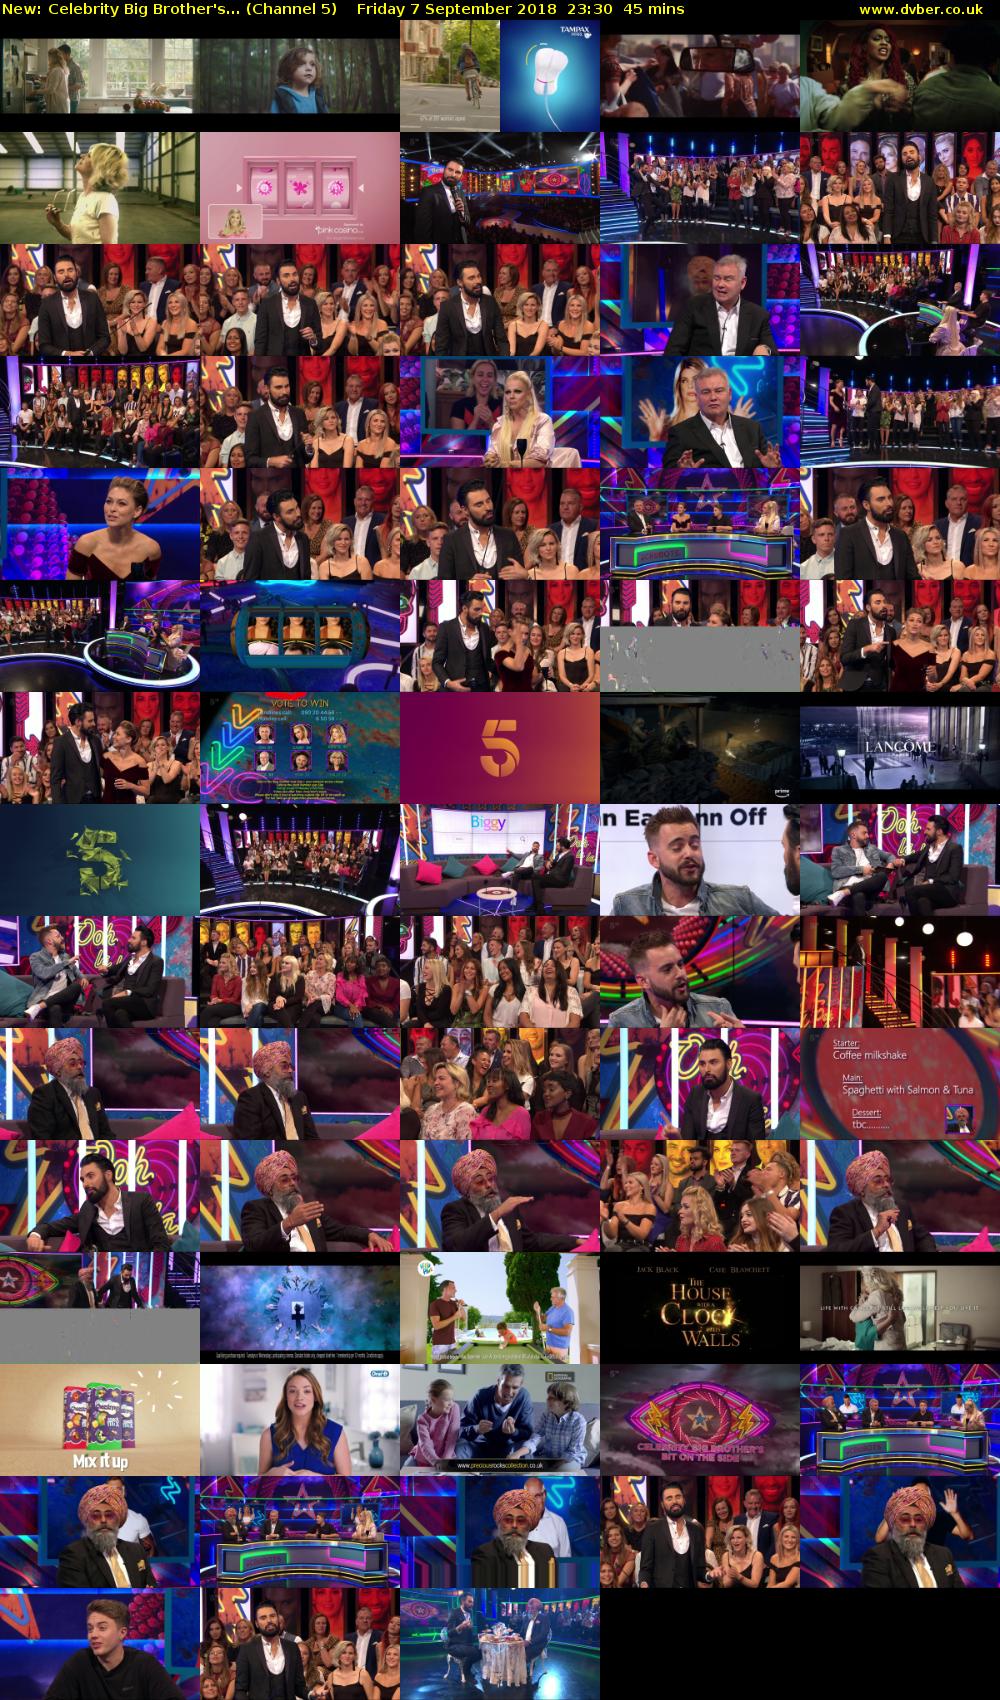 Celebrity Big Brother's... (Channel 5) Friday 7 September 2018 23:30 - 00:15